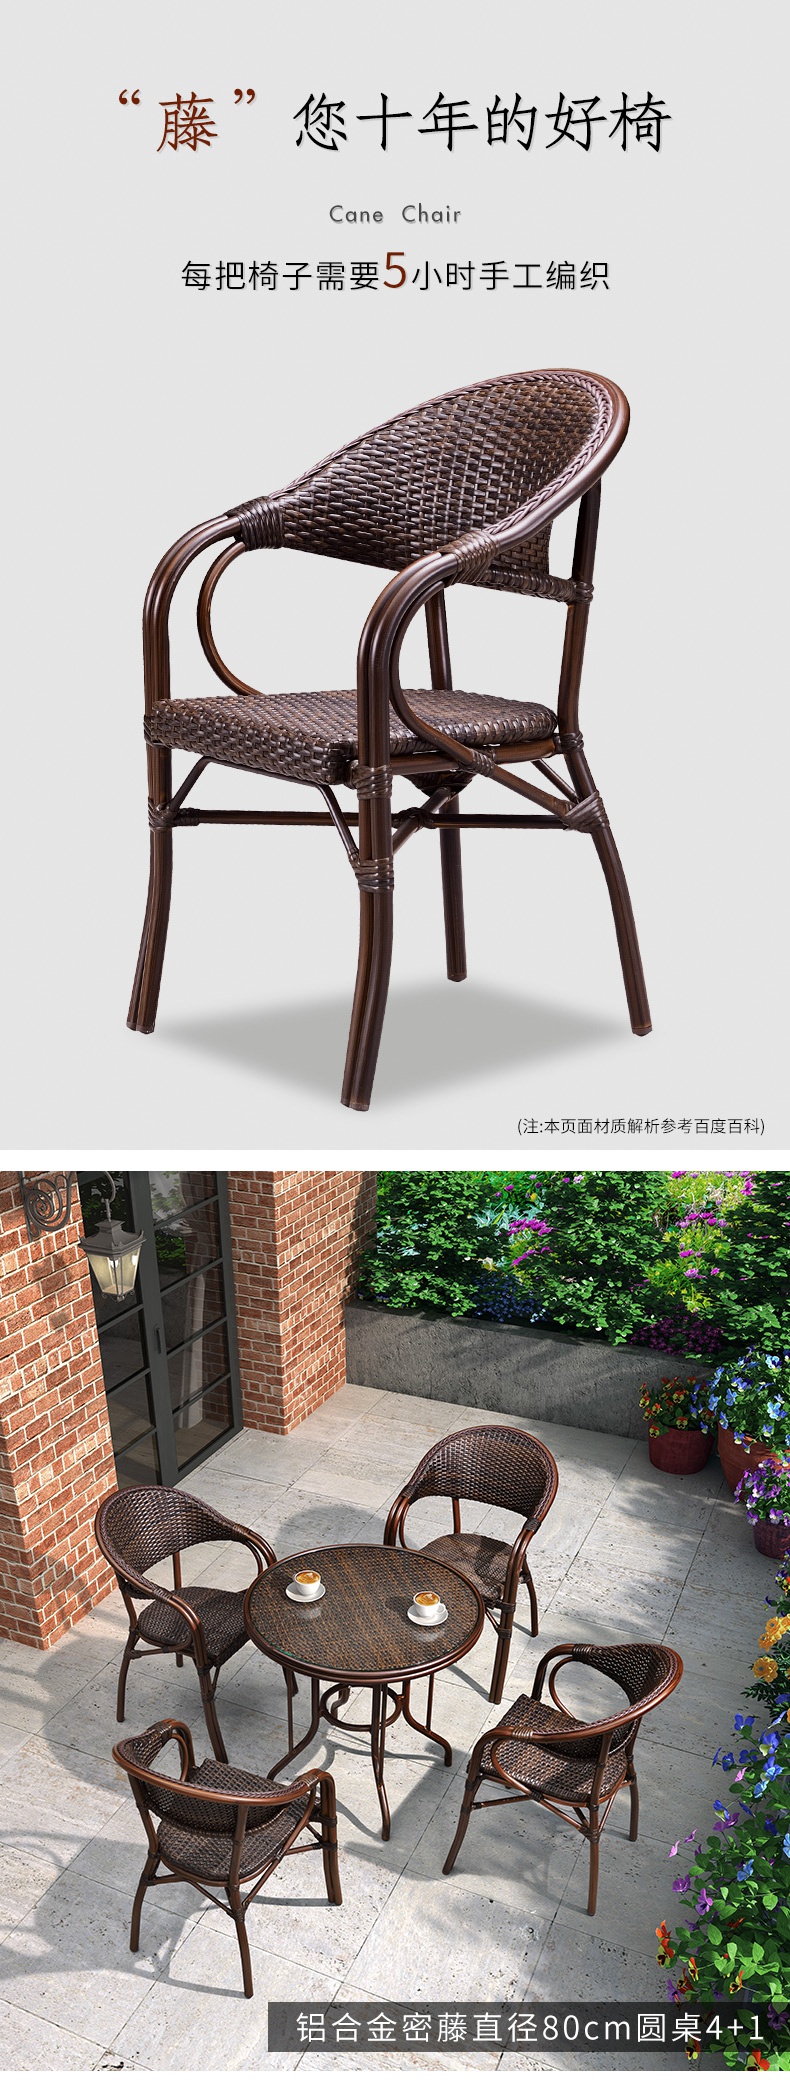 紫叶户外桌椅组合阳台藤椅三件套室外庭院花园休闲椅茶几藤编 椅哇哎